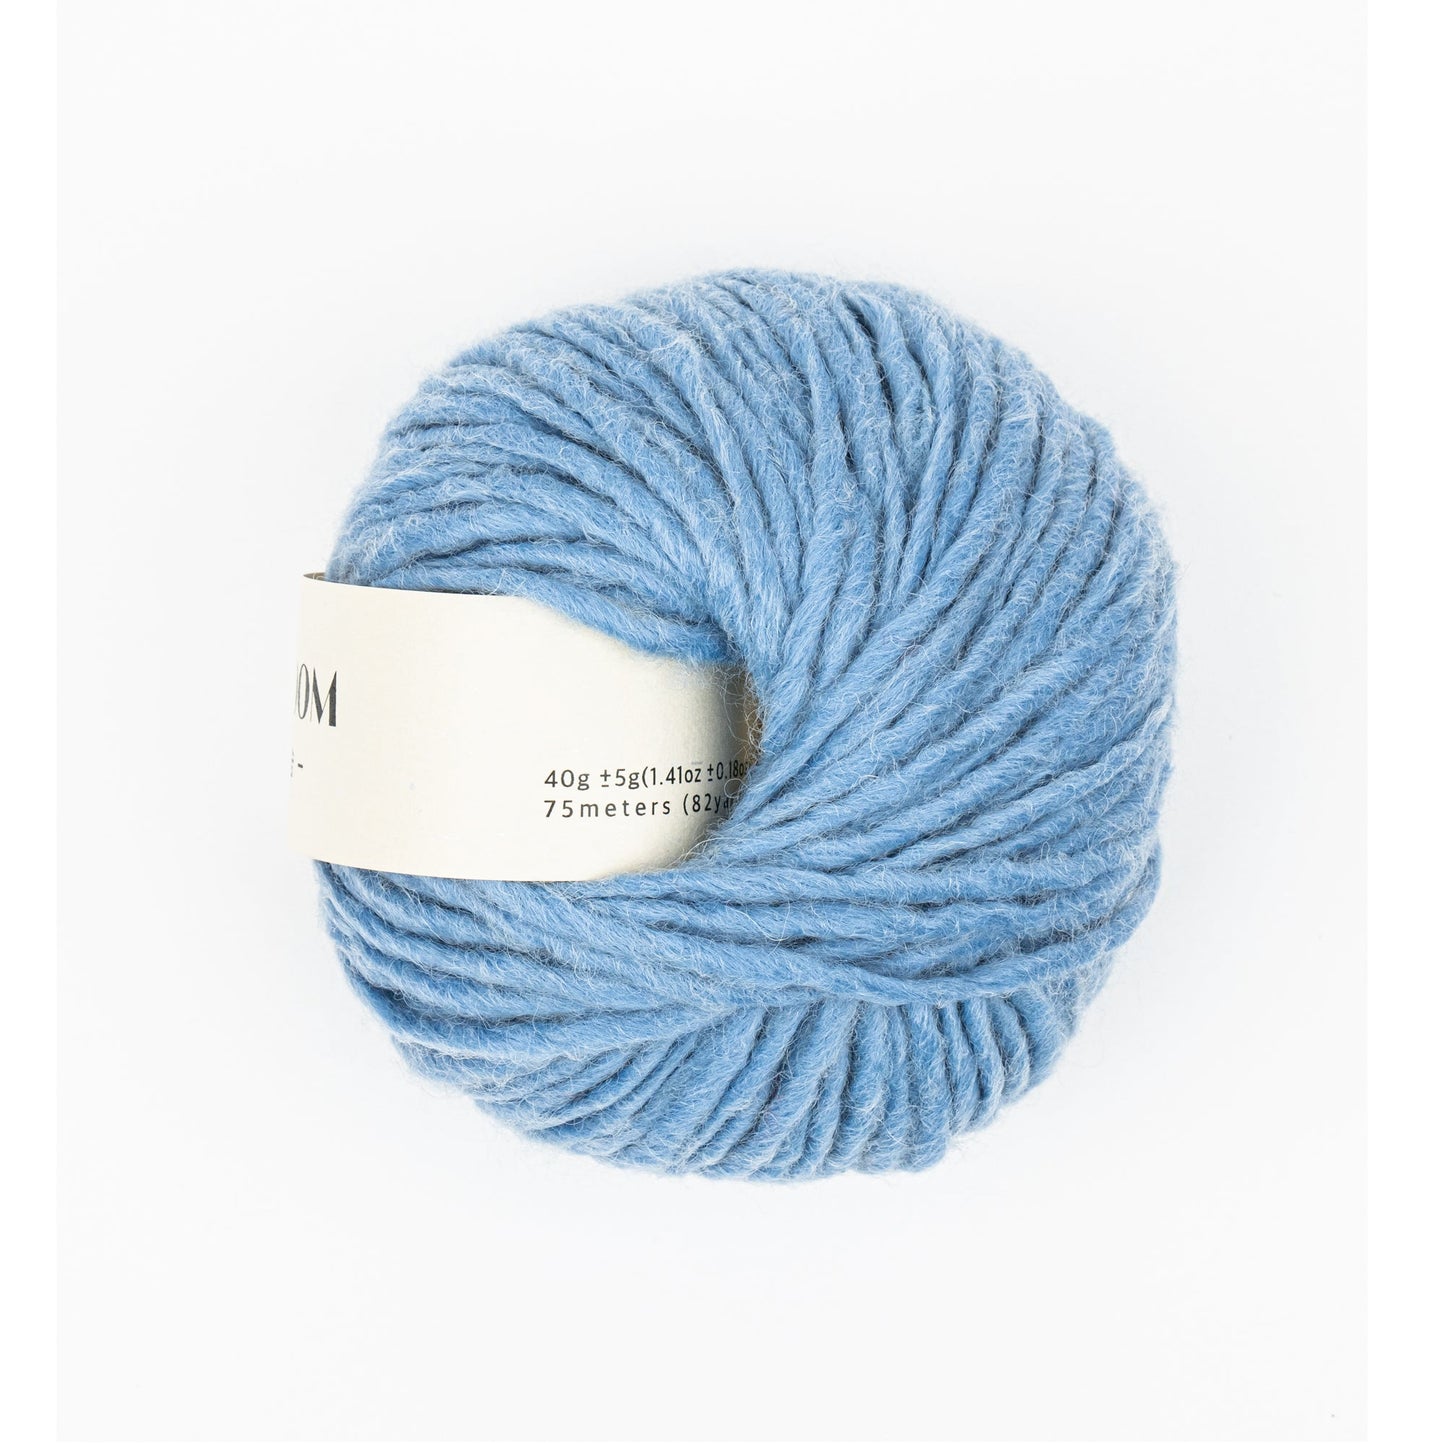 Ddasoom, Wool Acrylic Yarn, Light and Fluffy, Pretty Colors - Blue